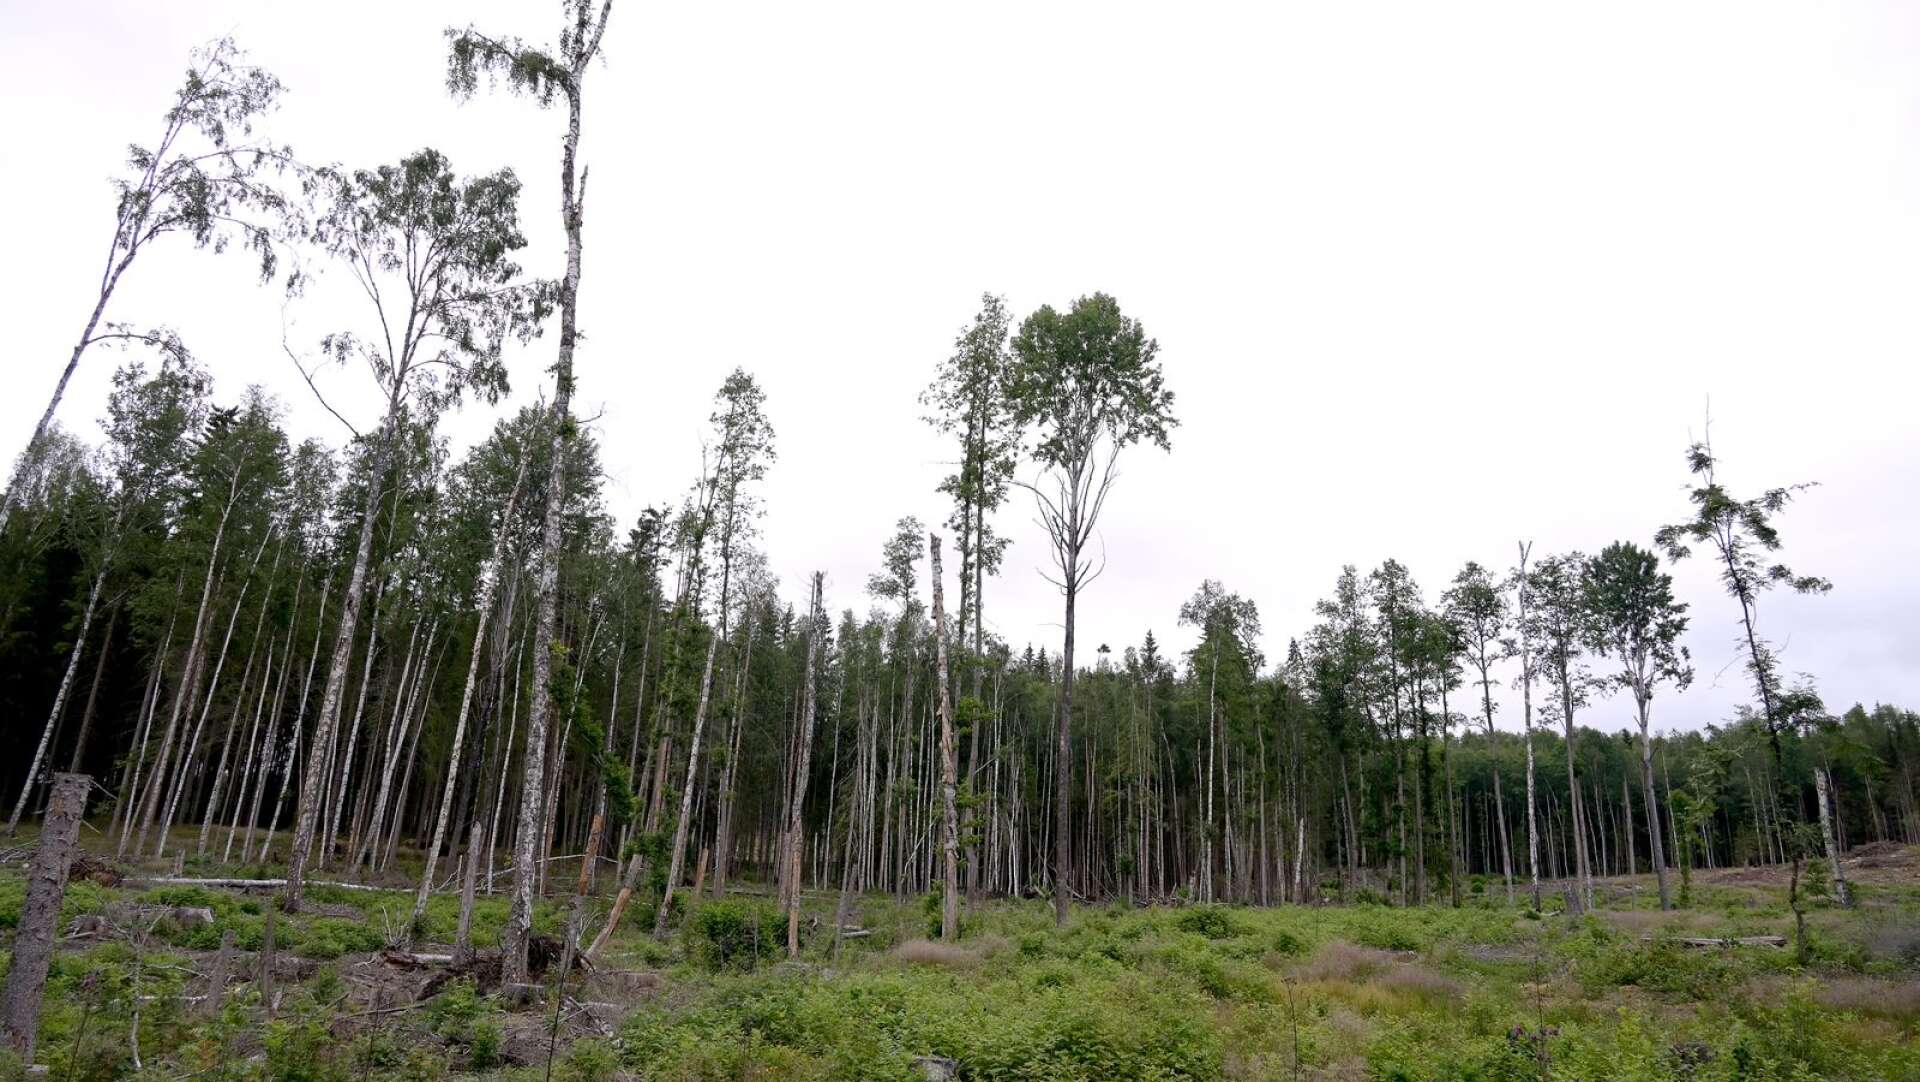 Sverige var ett av de mest kritiska länderna till EU:s skogsstrategi och har aktivt motarbetat en lång rad av EU:s förslag för stärkt miljöhänsyn i skogen, skriver Johanna Sandahl och Karin Lexén.